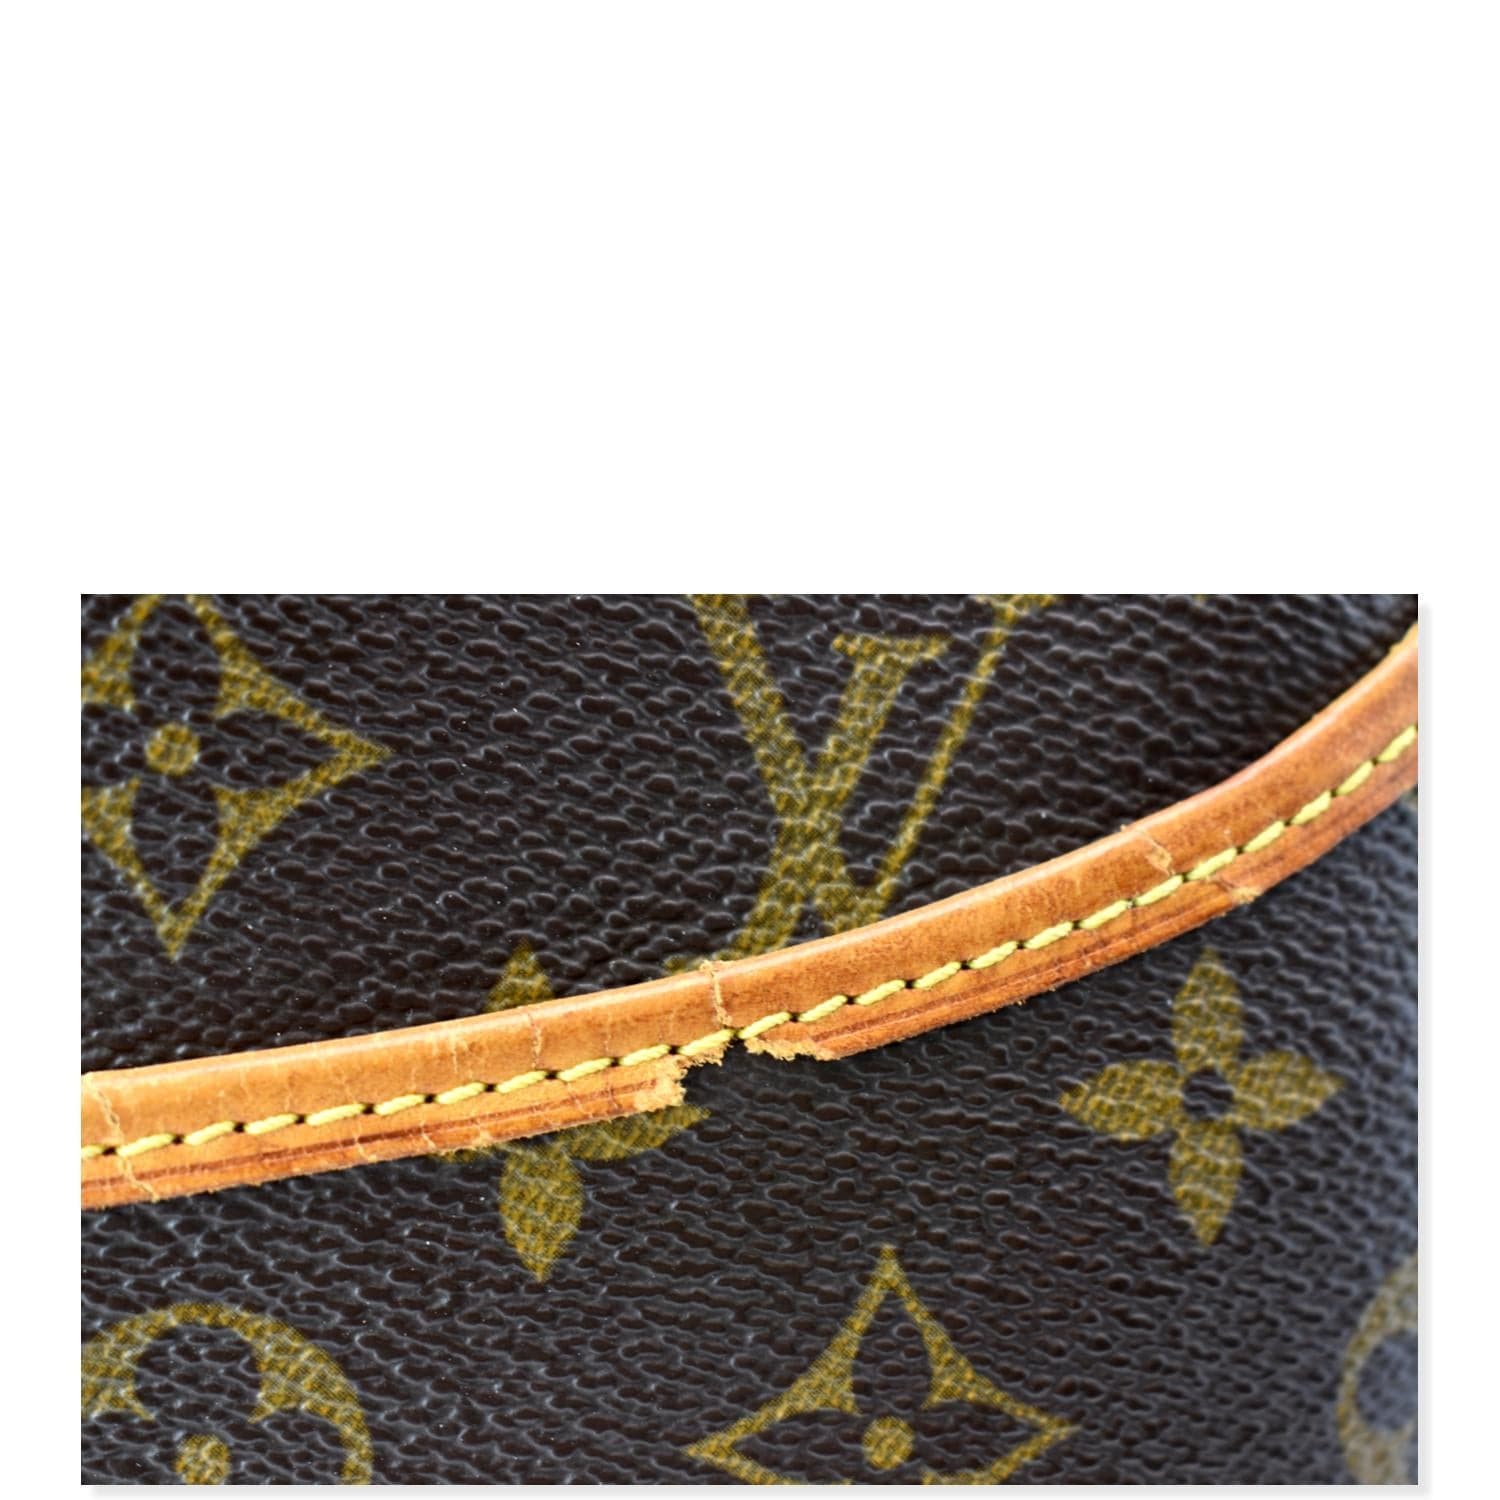 Louis Vuitton Monogram Deauville Handbag Brown - $900 - From Ella